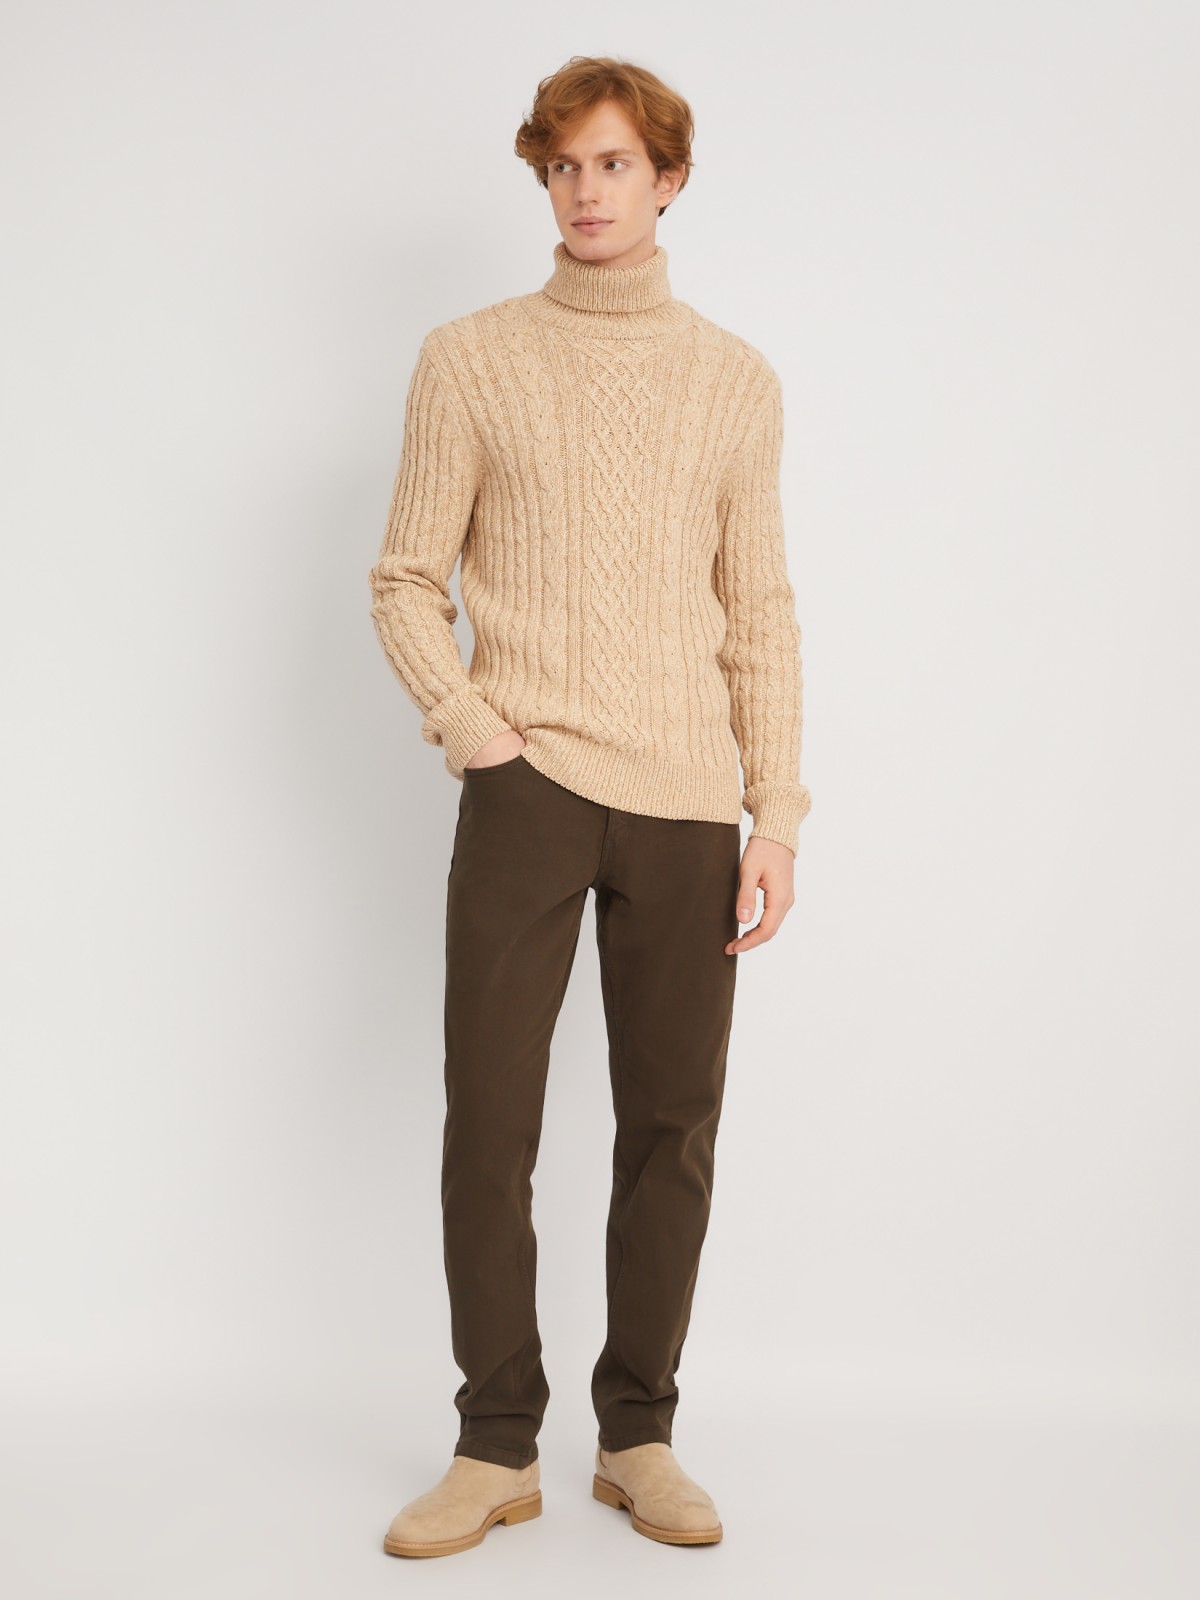 Вязаный свитер с фактурным узором косы zolla 013446165093, цвет коричневый, размер S - фото 2